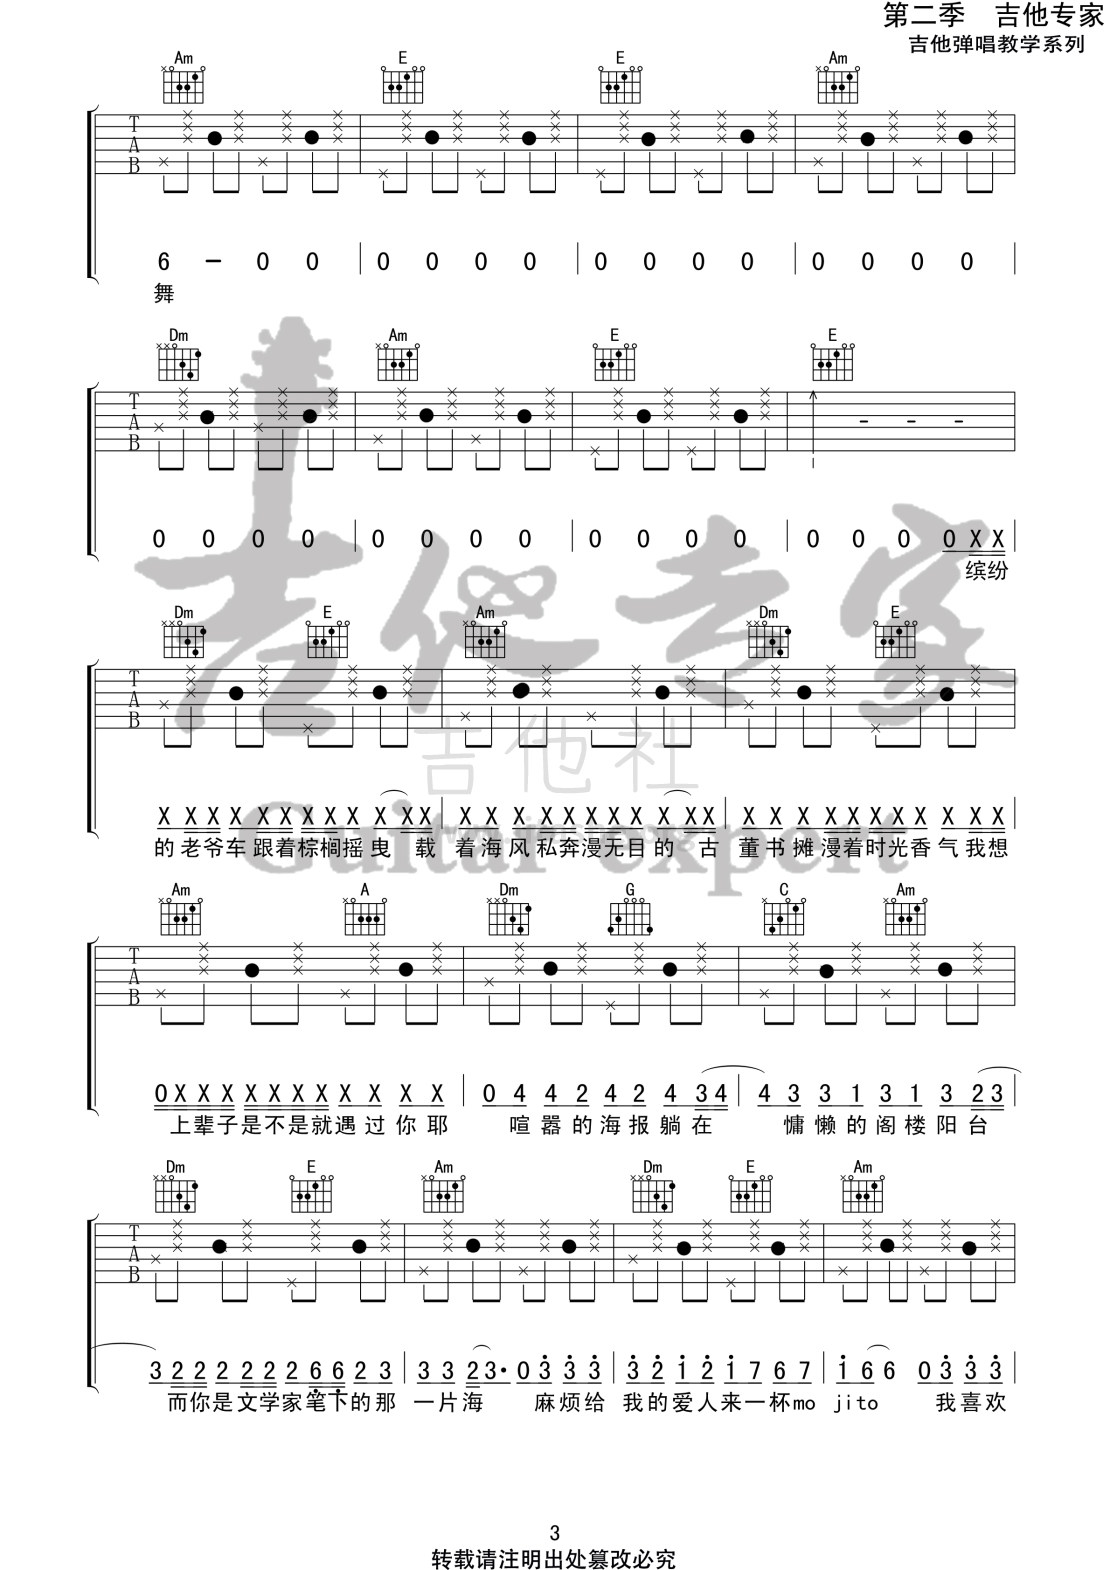 Mojito(音艺吉他专家弹唱教学:第二季第58集)吉他谱(图片谱,弹唱,伴奏,教程)_周杰伦(Jay Chou)_Mojito3 第二季第五十八集.jpg